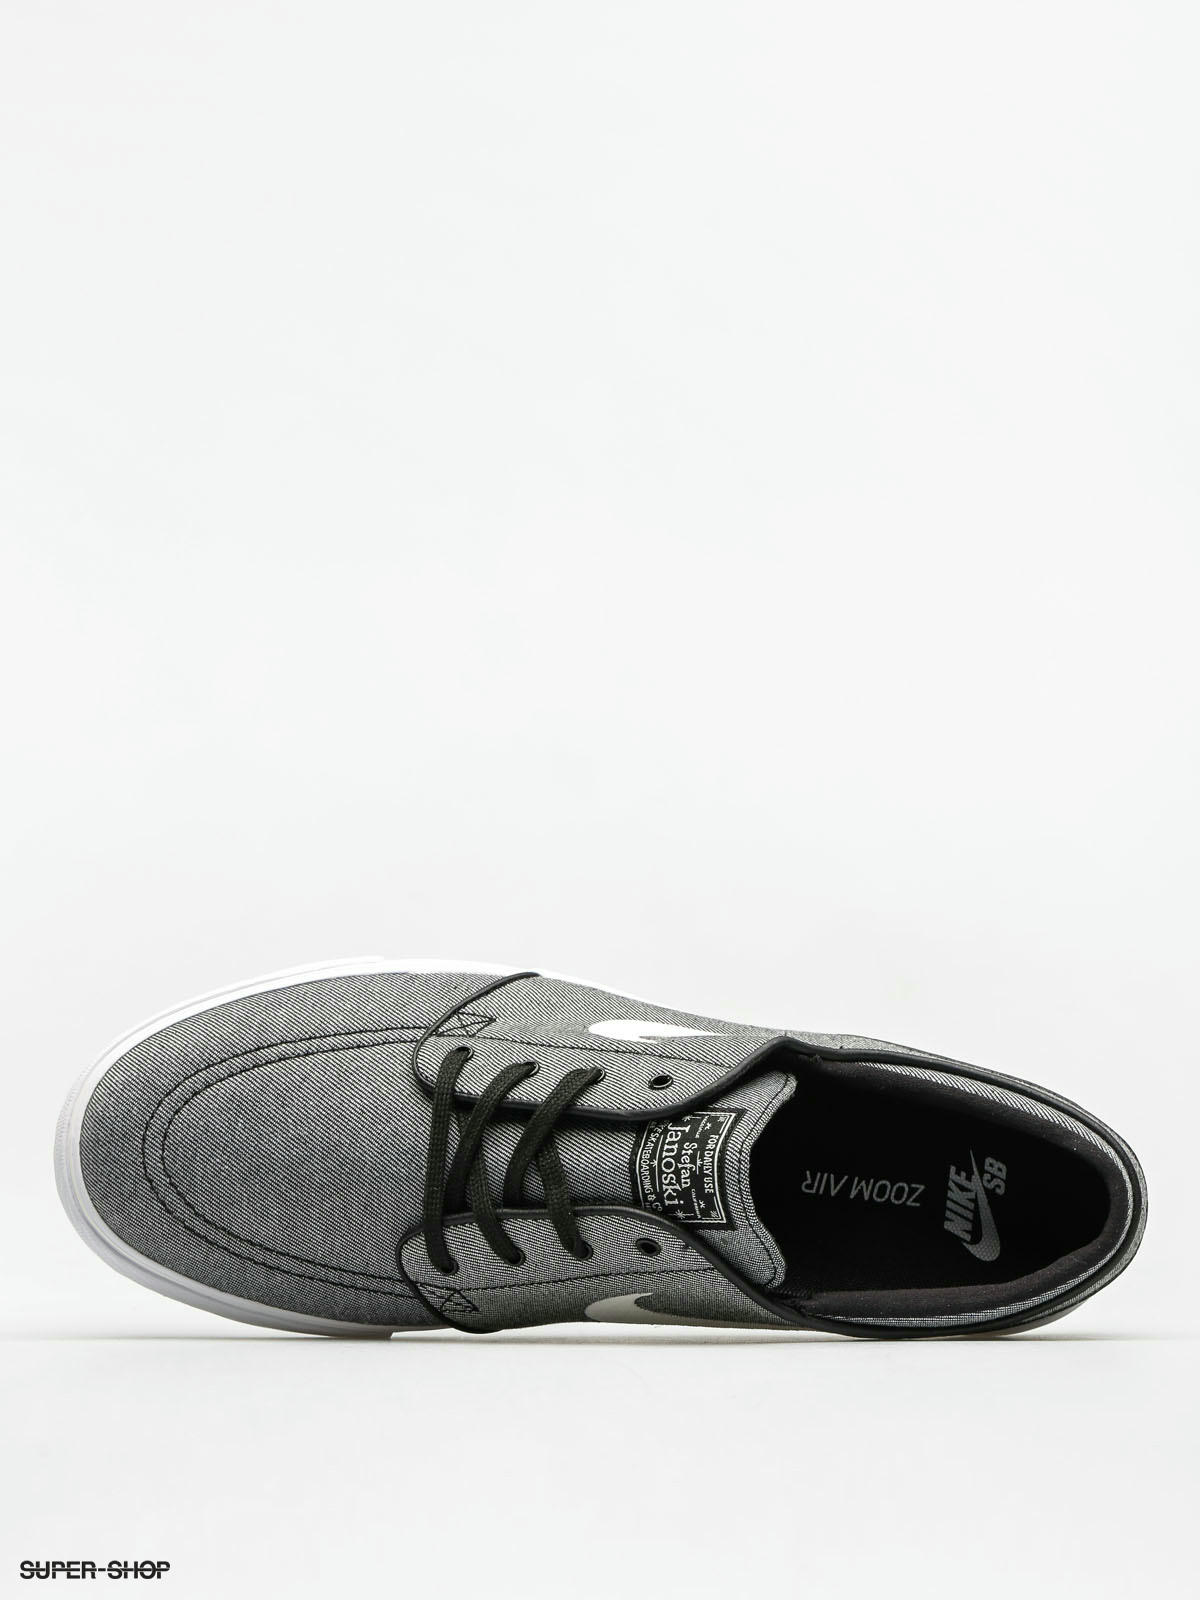 nike sb zoom stefan janoski canvas black & white shoes